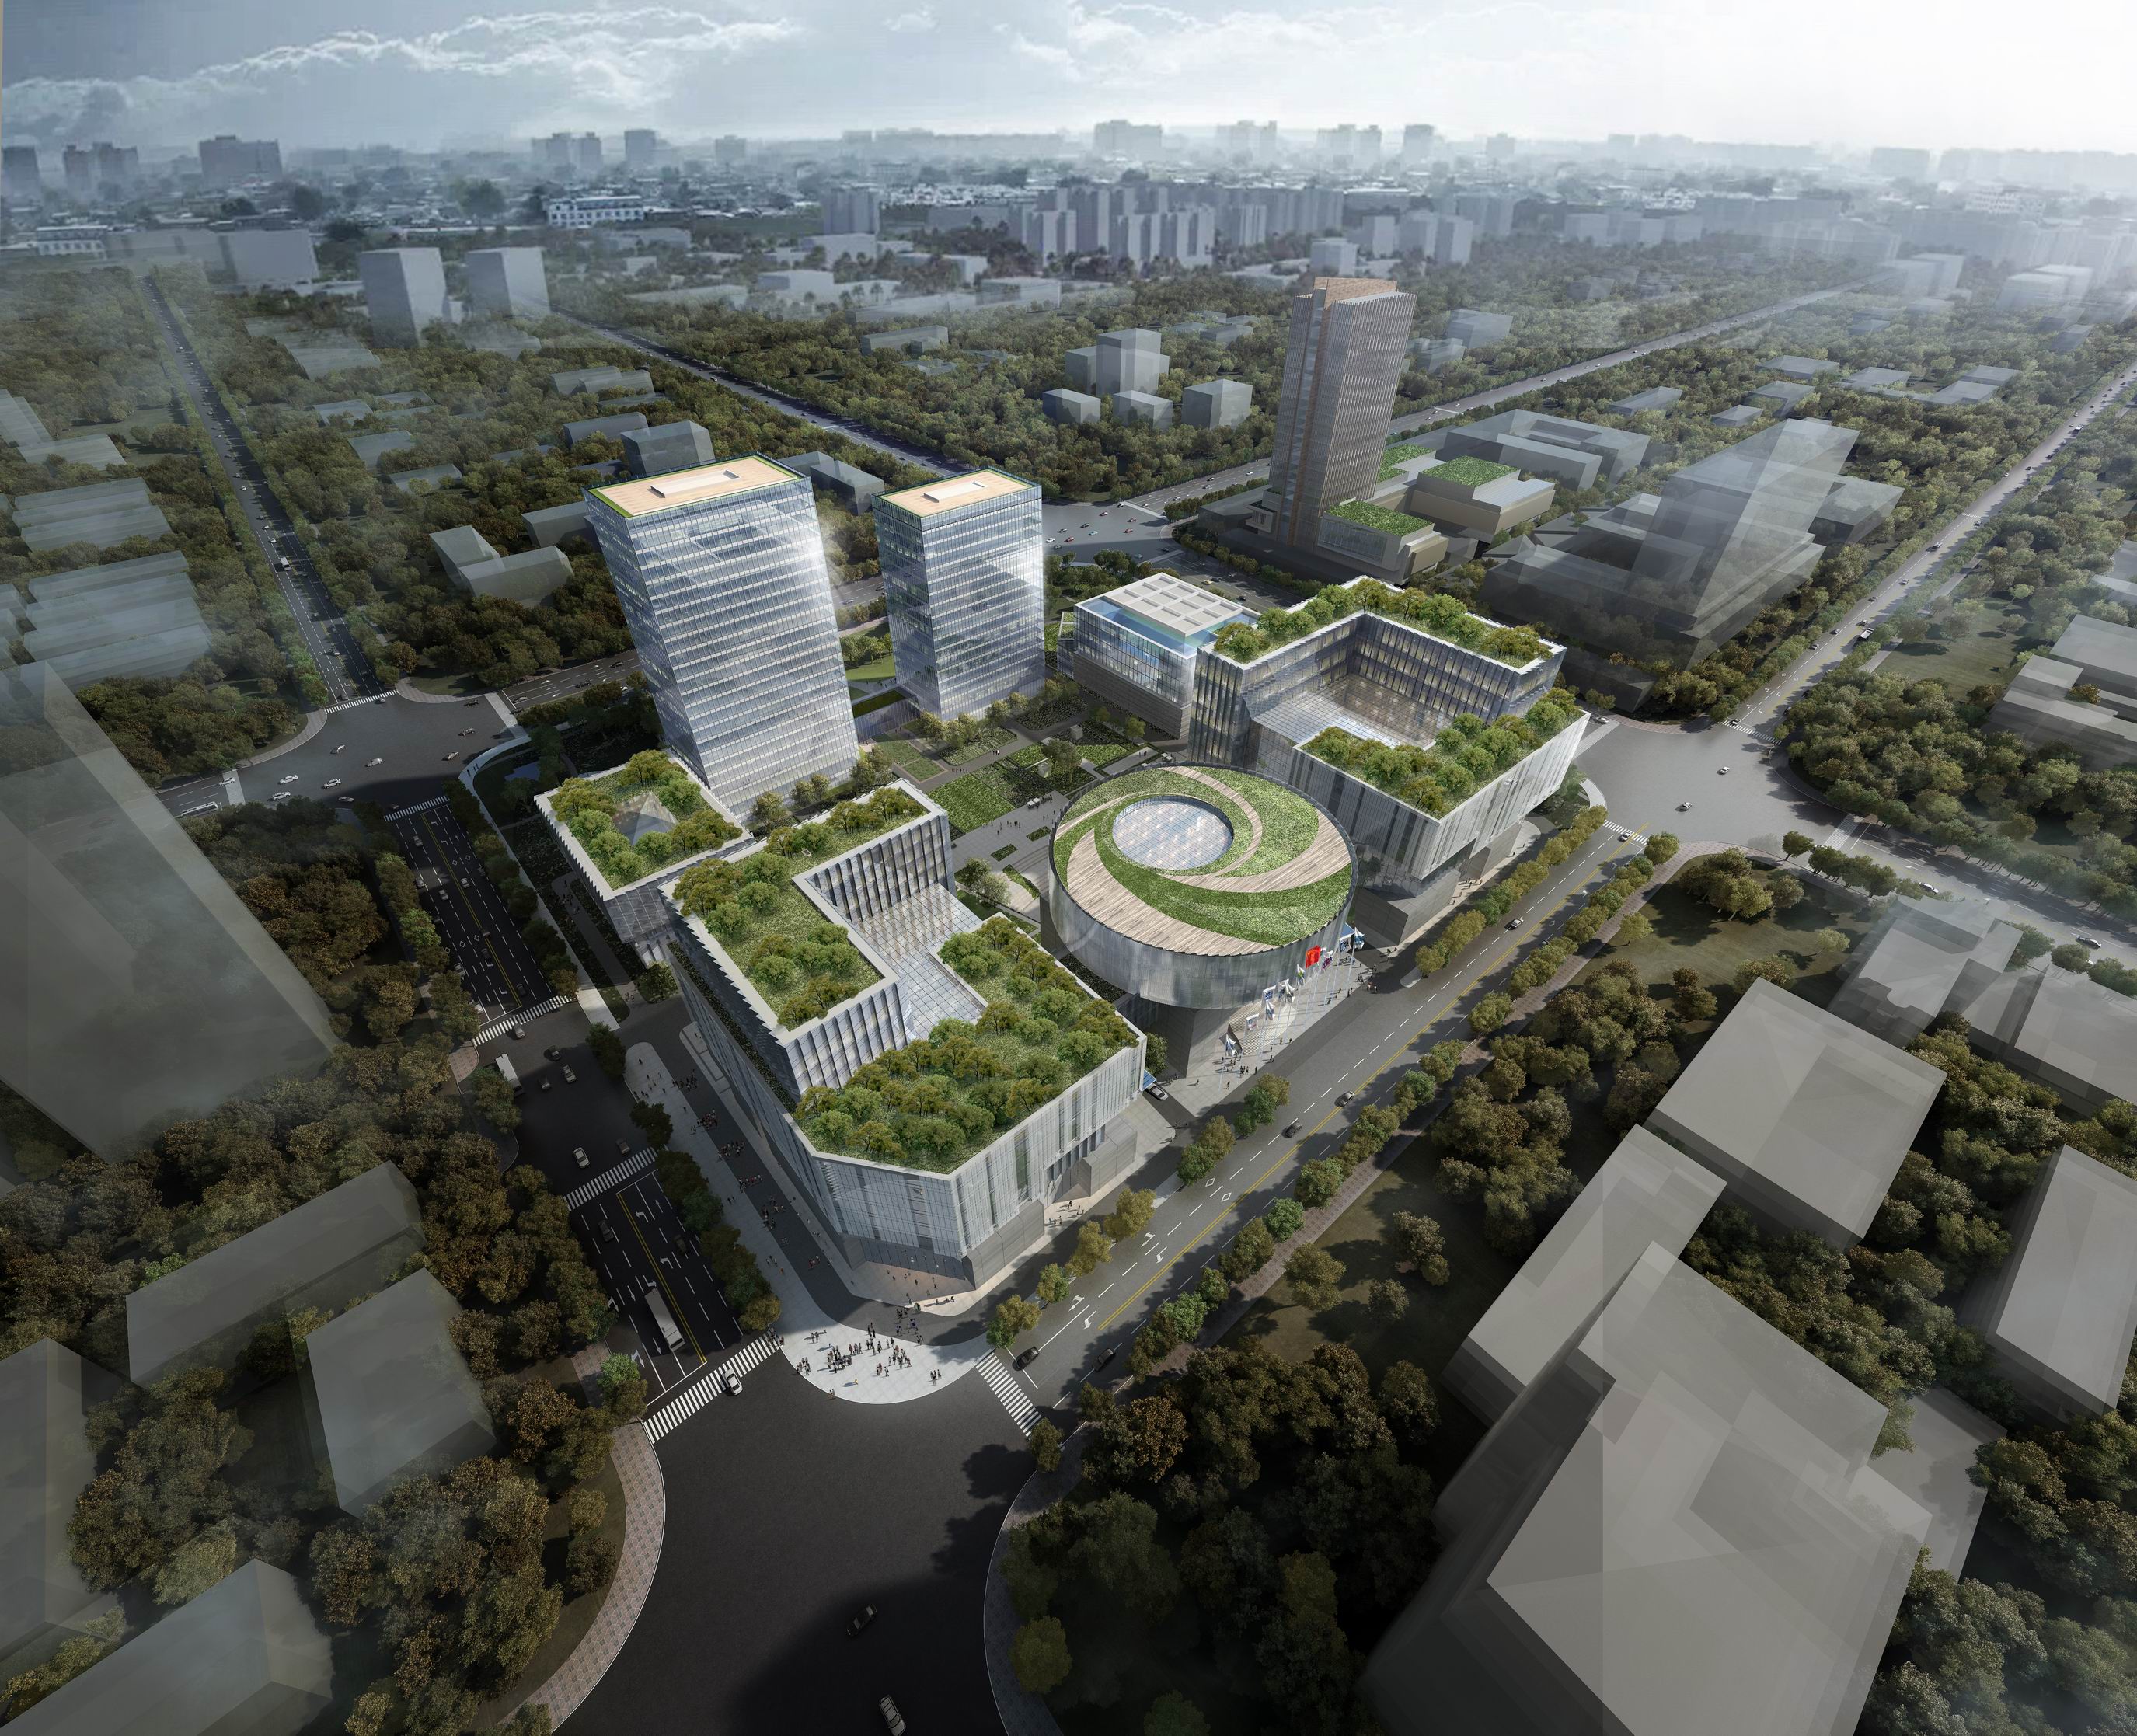 首页 信息公开 规划公示 其他 正文 项目名称: 郑州高新智慧产业园